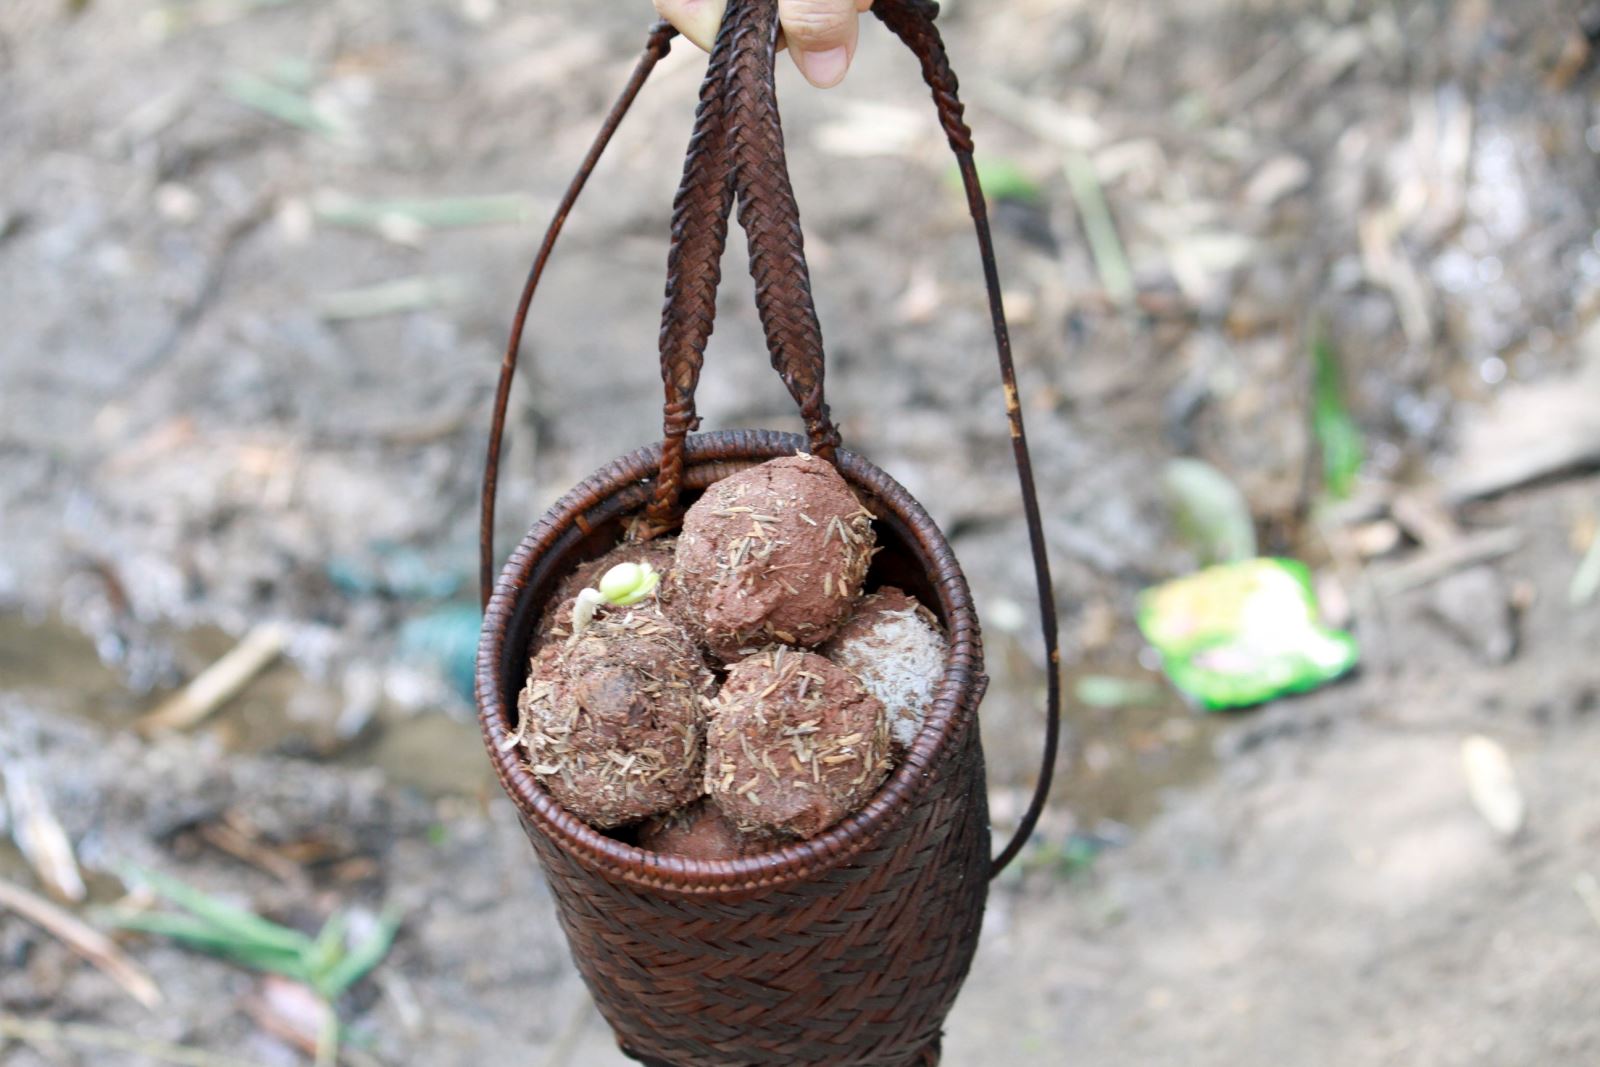 Bom hạt giống với 5 loại hạt giống được bọ trong lớp đất sét trộn với phân.